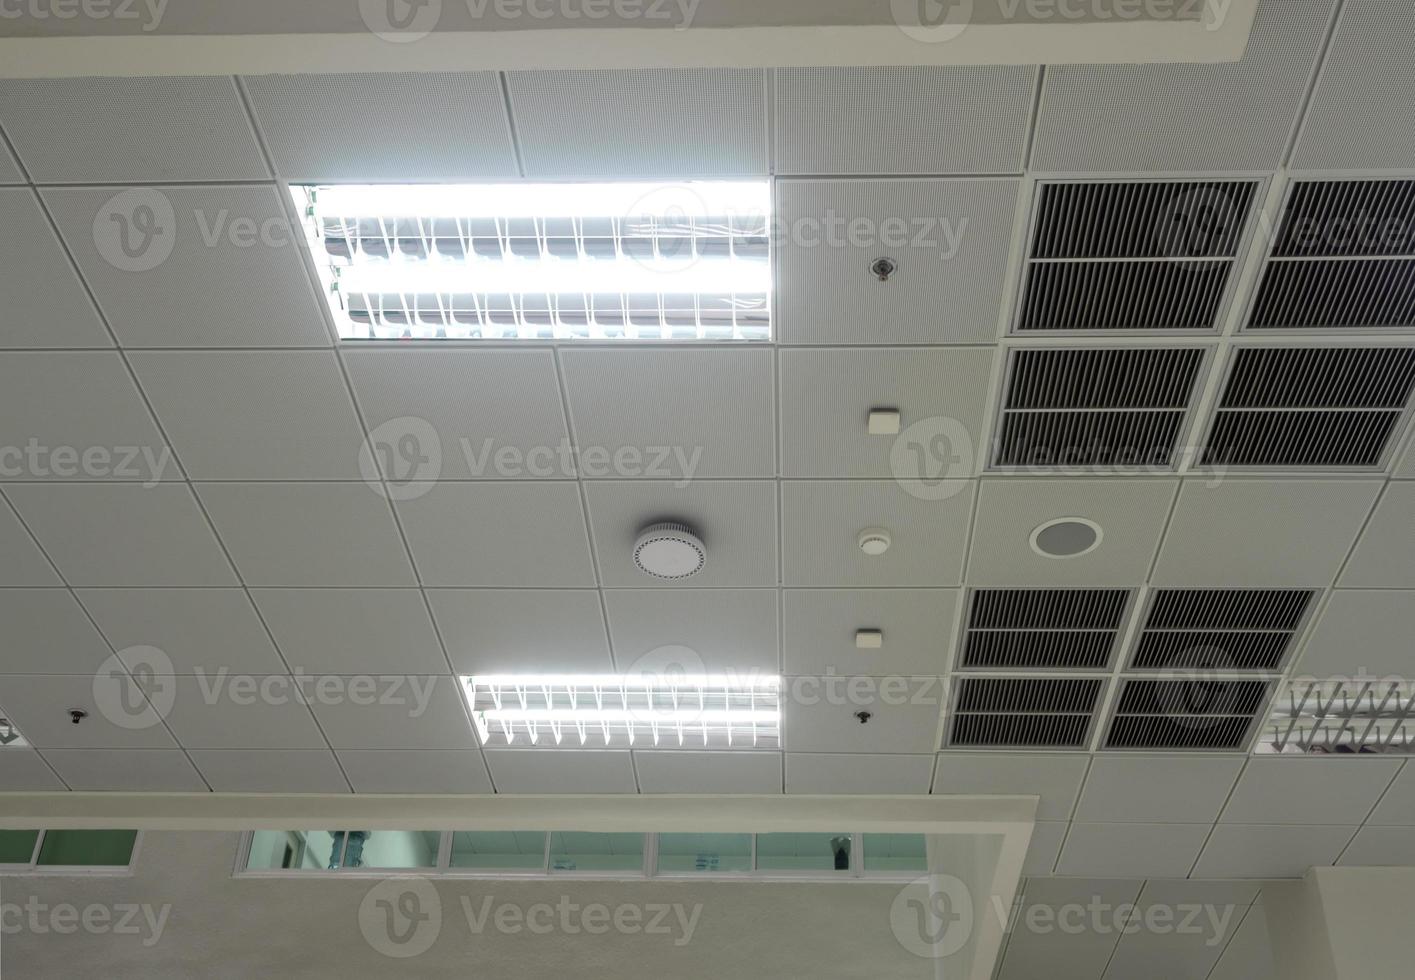 maschera aria condizionata, illuminazione e moderne attrezzature a soffitto, spegnimento selezionato alcune luci per il risparmio energetico foto